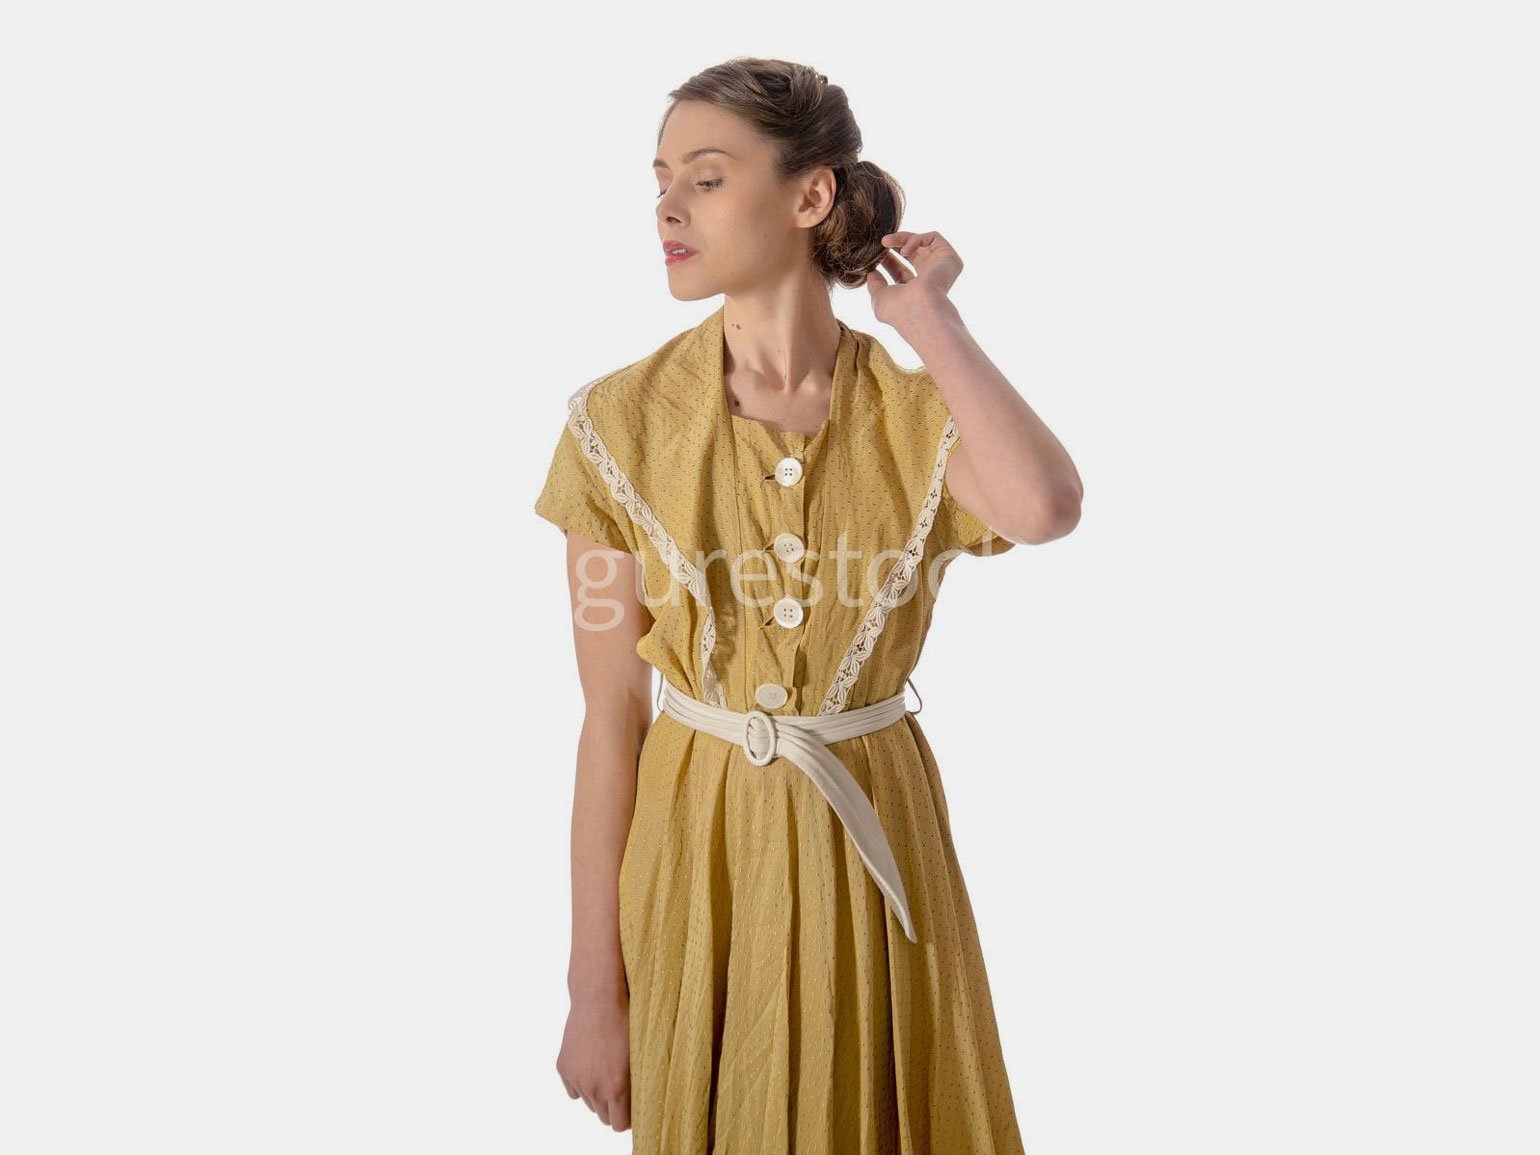 Референс девушки  в длинном жёлтом платье с короткой причёской и поднятой к голове рукой